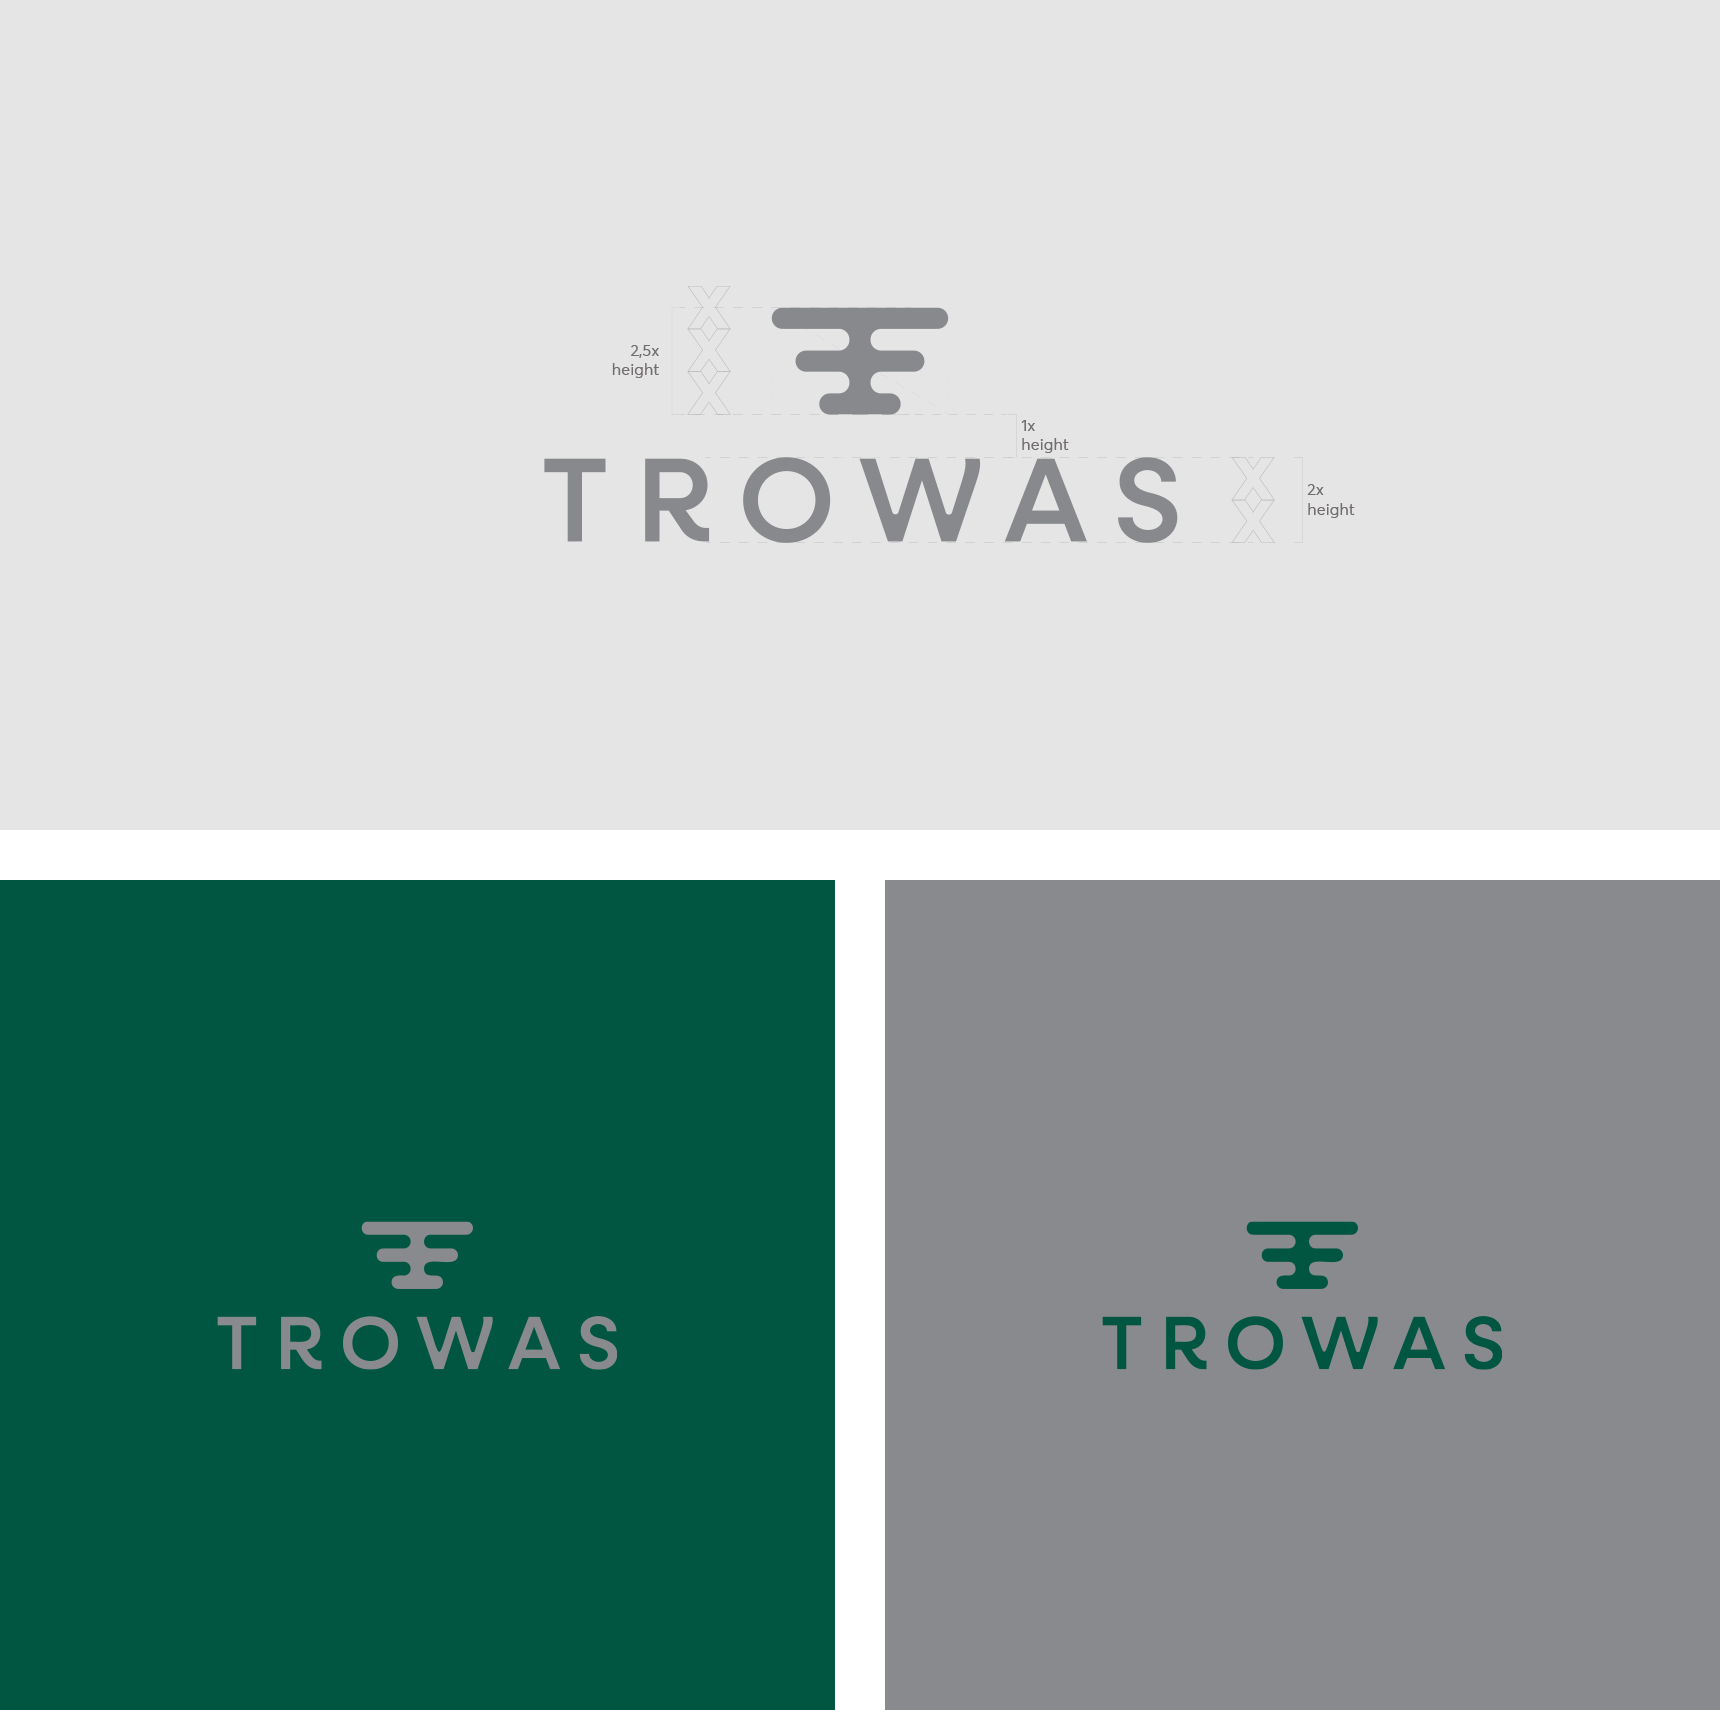 Trowas-2 - Türkiye’nin lider dijital kartvizit platformu TROWAS-5- logo part